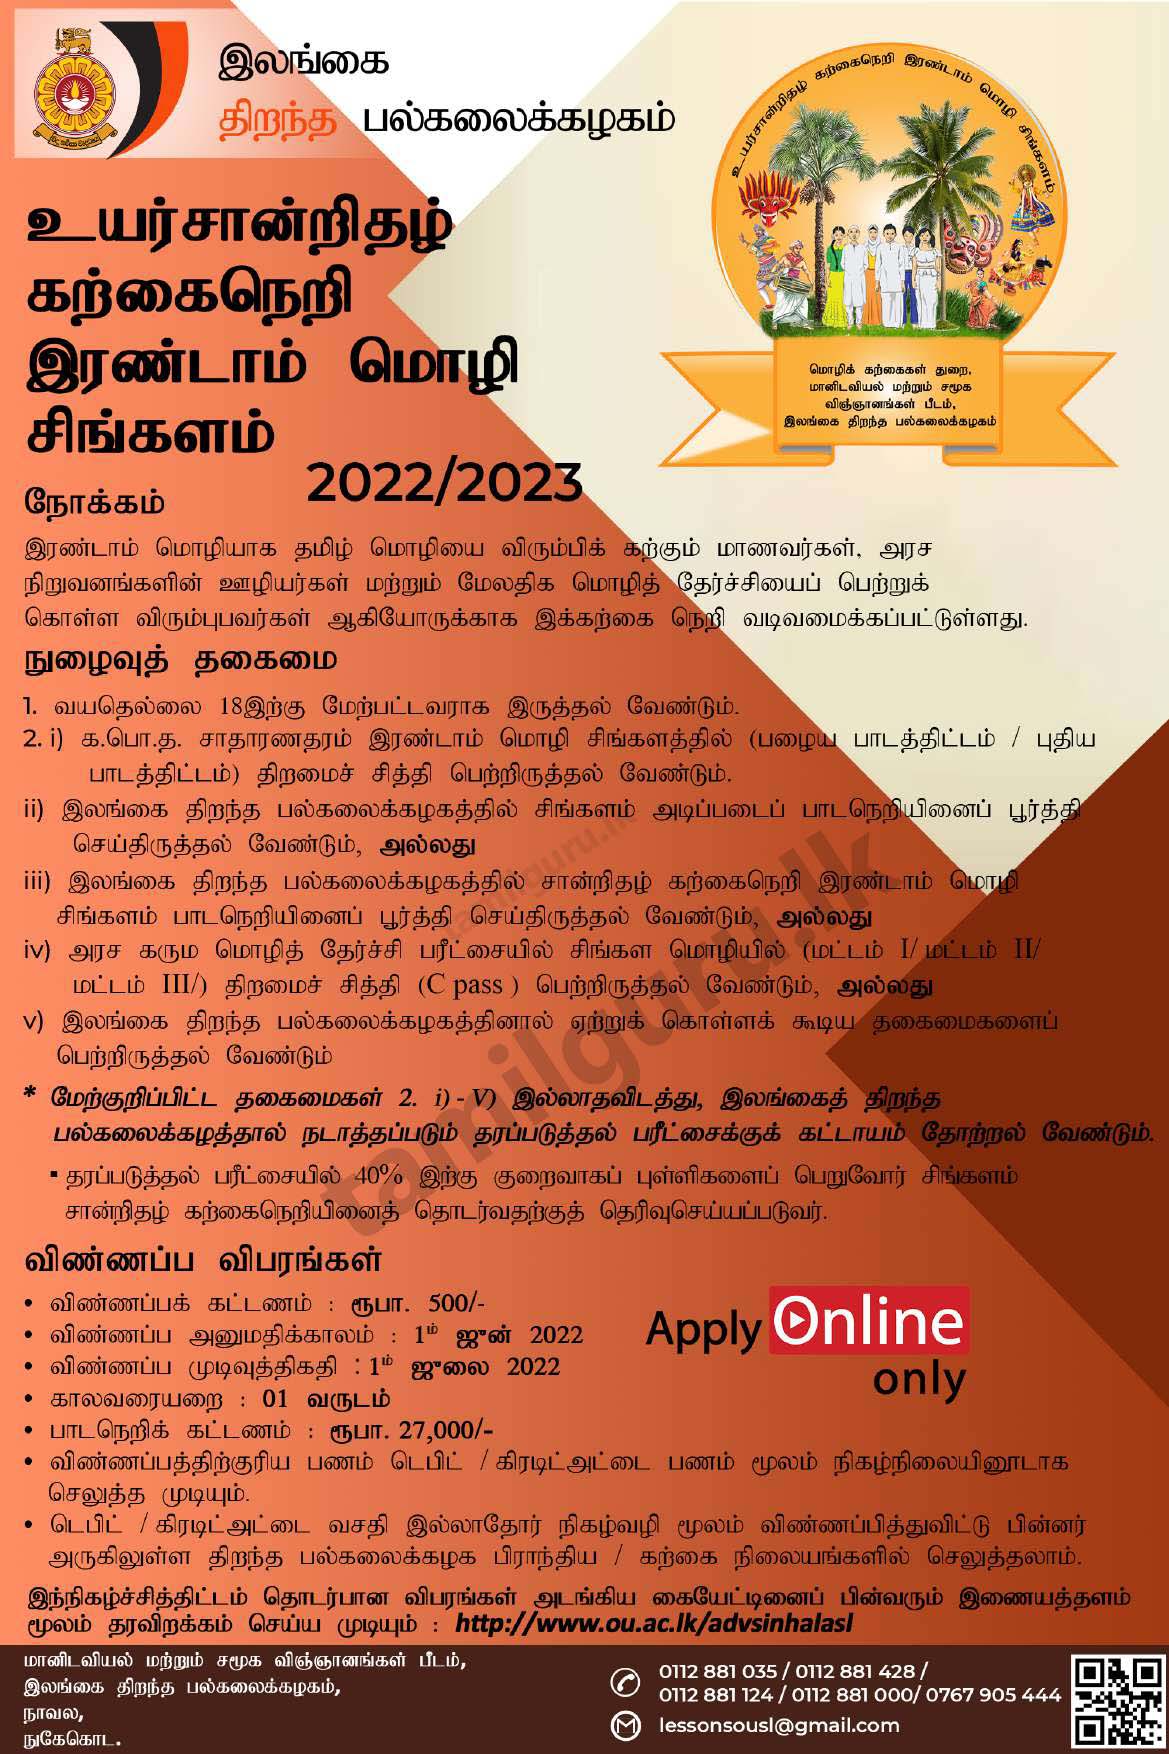 Advanced Certificate in Sinhala as a Second Language Course 2022/2023 - The Open University of Sri Lanka (OUSL) / இரண்டாம் மொழி சிங்களம் உயர் சான்றிதழ் கற்கைநெறி - இலங்கை திறந்த பல்கலைக்கழகம்